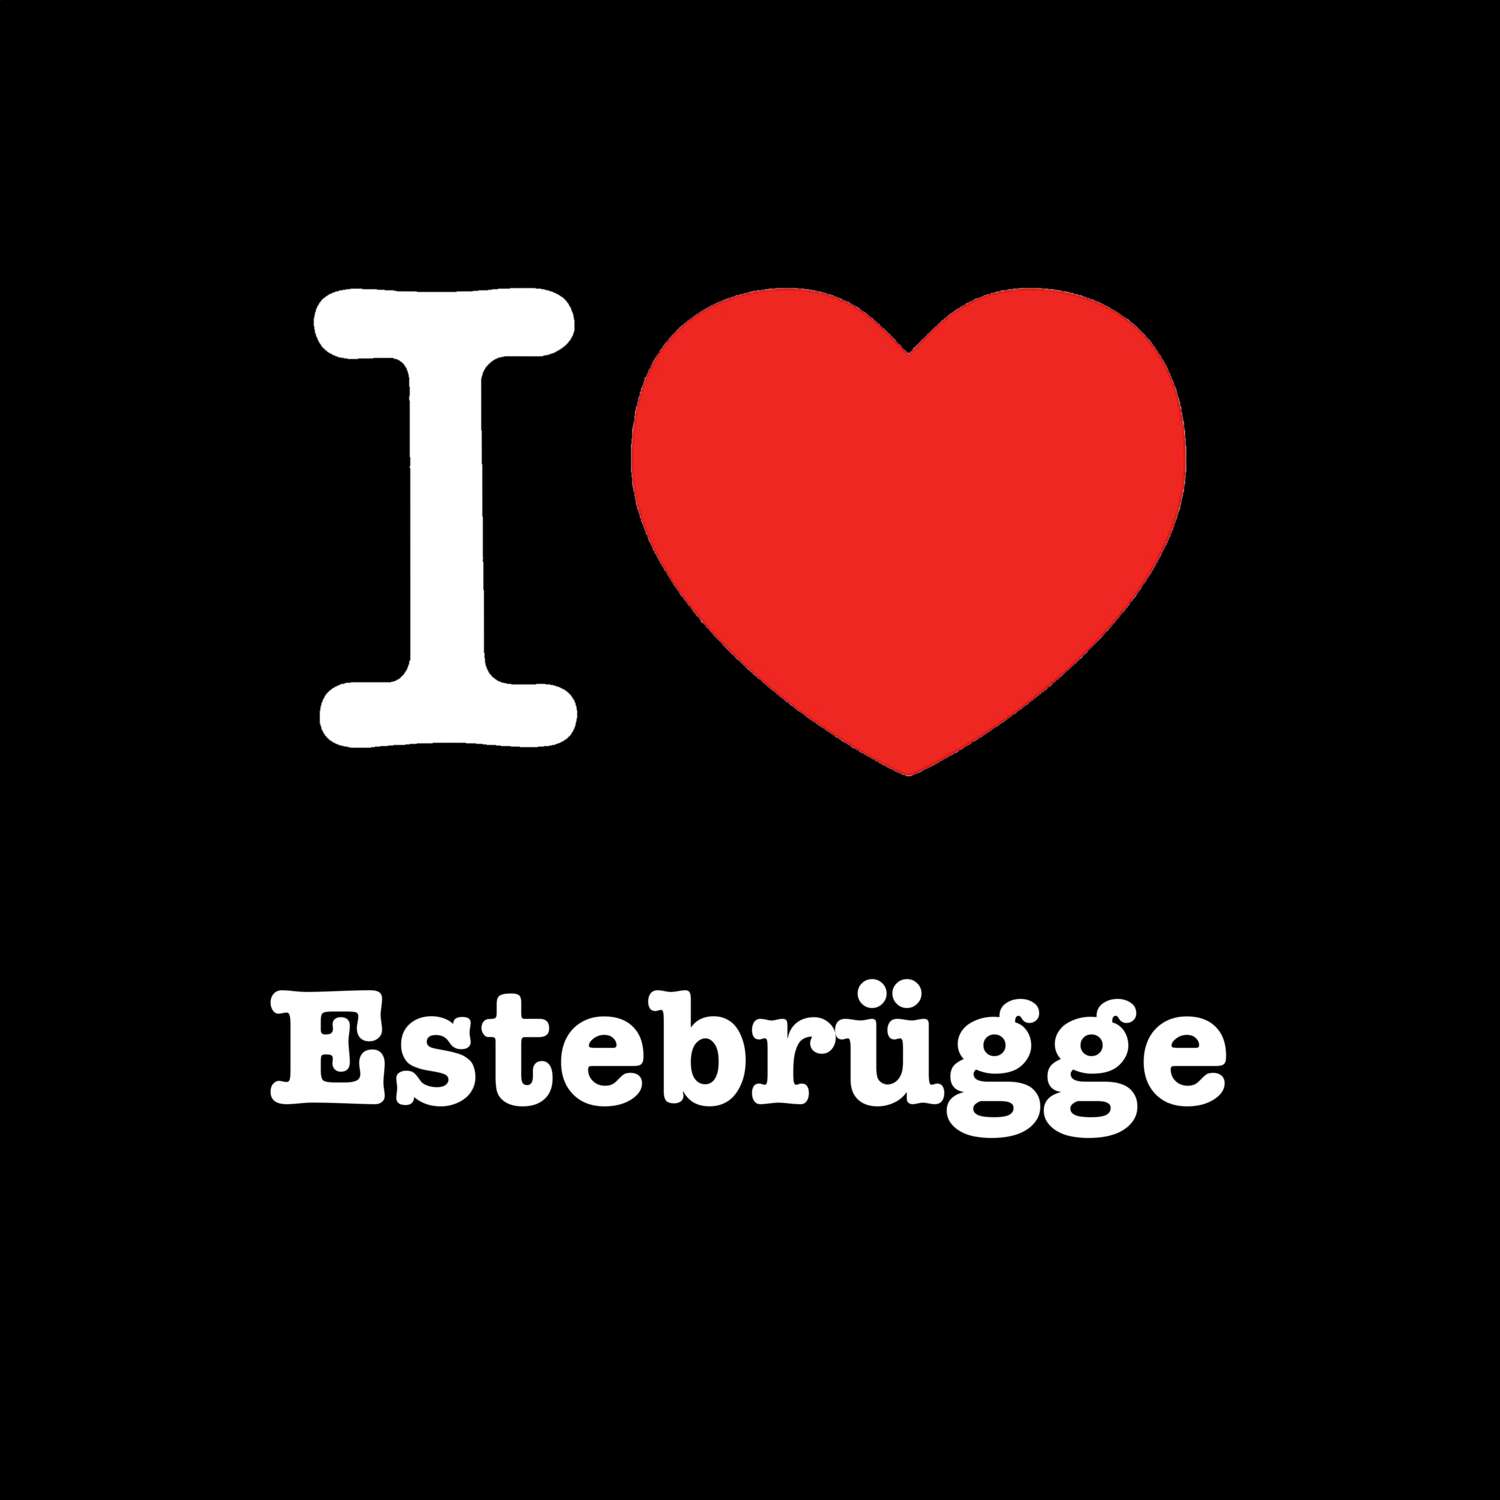 Estebrügge T-Shirt »I love«